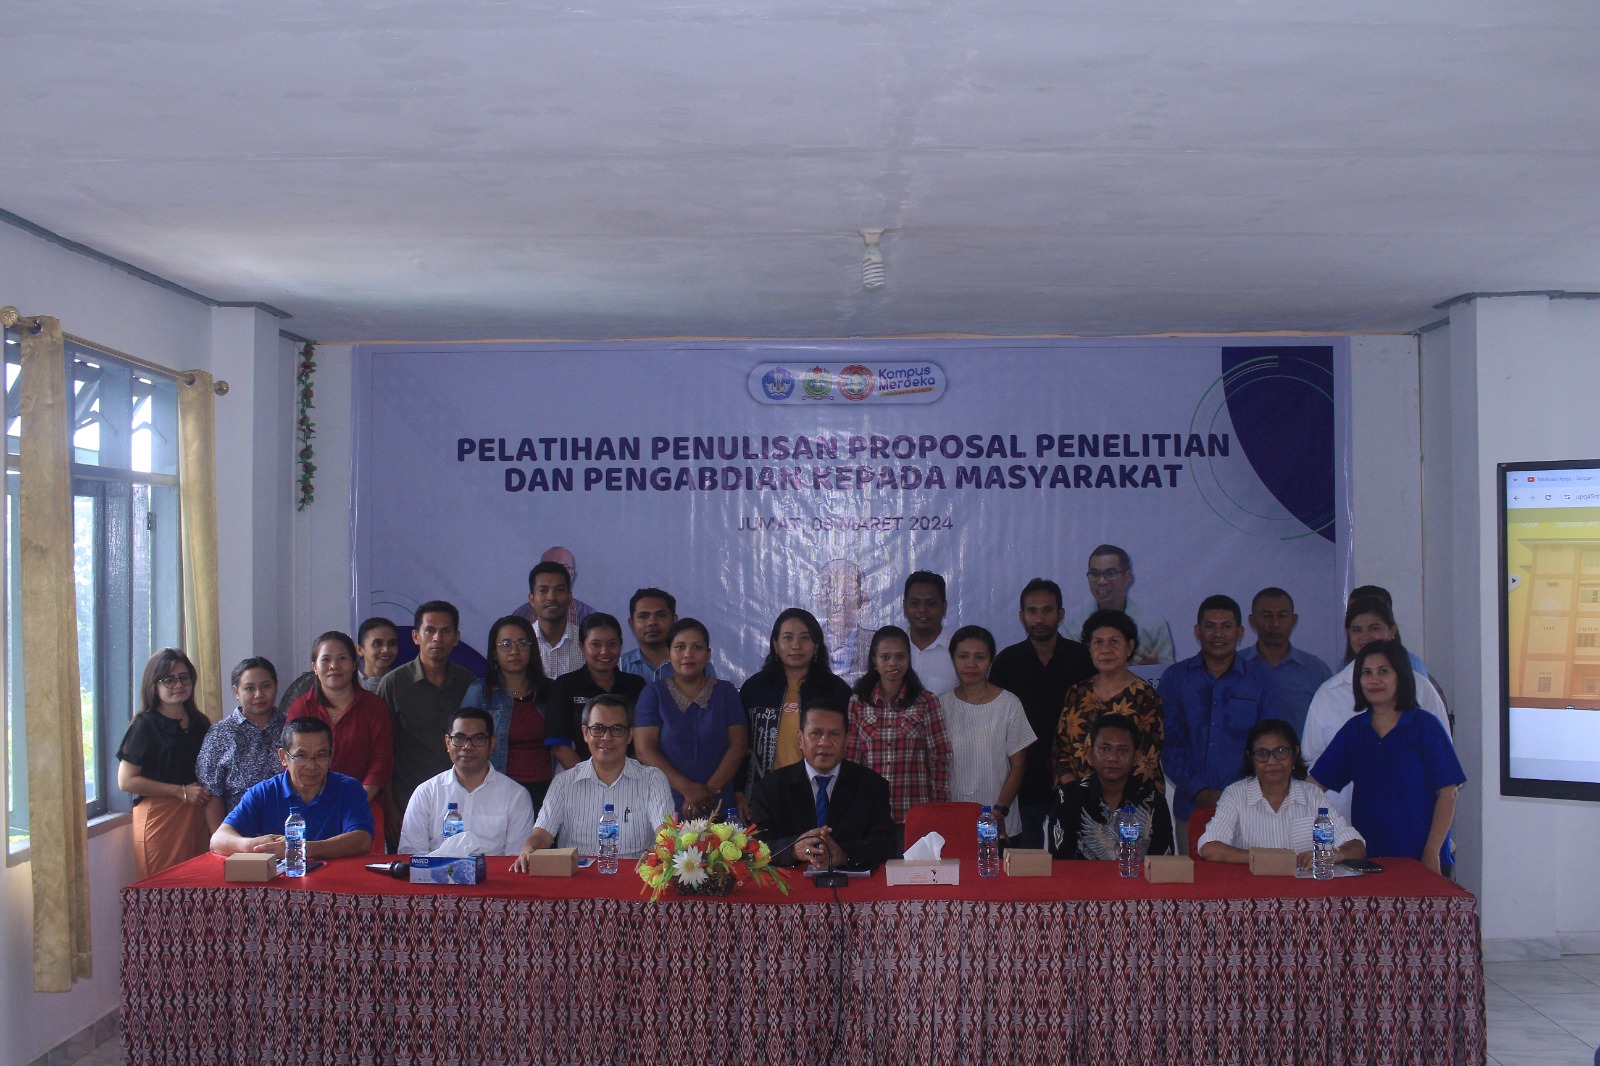 Foto bersama kegiatan Pelatihan Penulisan Proposal Penelitian dan Pengabdian kepada Masyarakat.